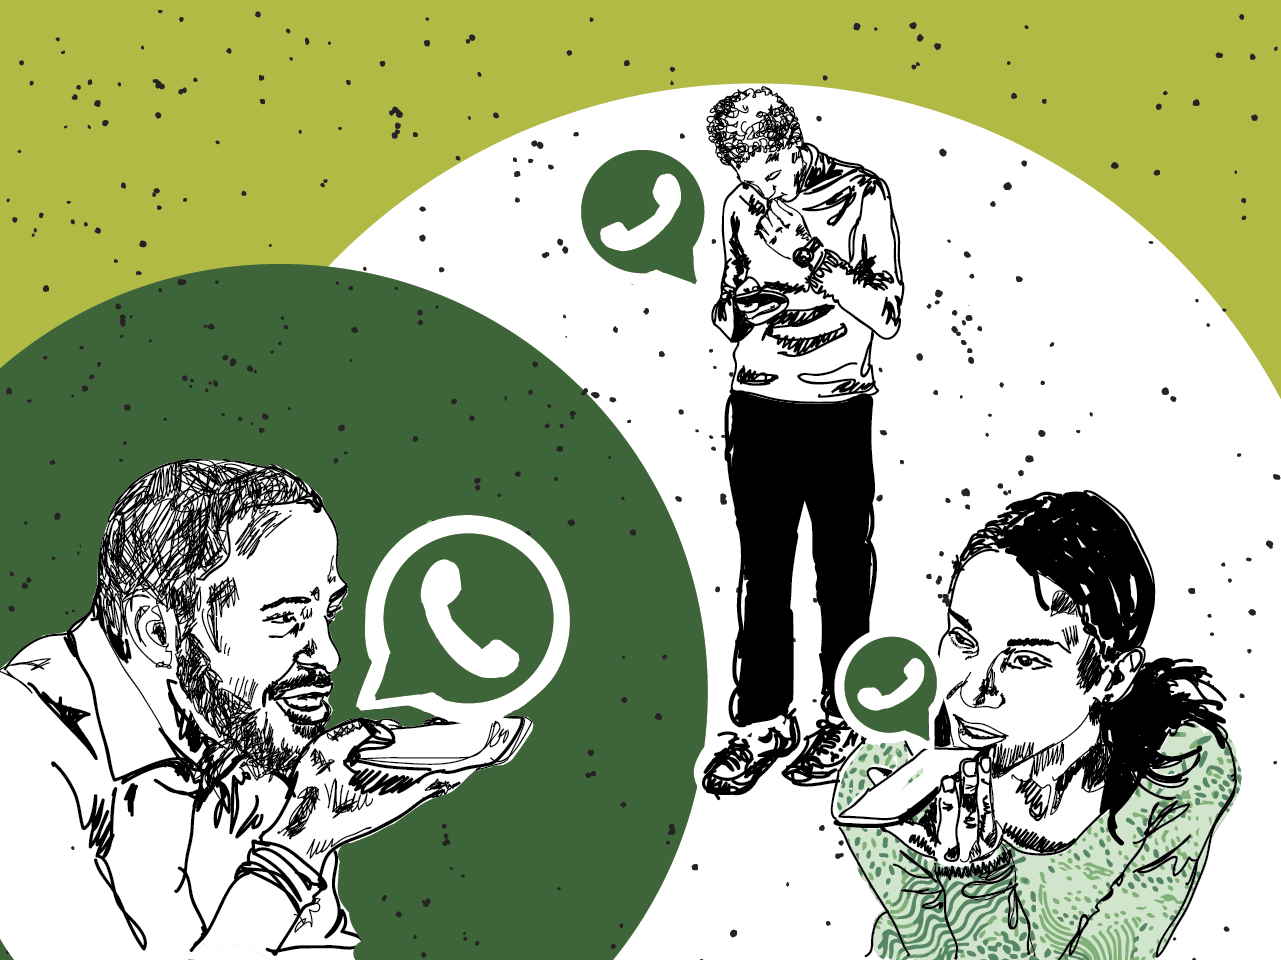 WhatsApp duplica tamanho máximo de grupos para até 512 pessoas (mas ainda não no Brasil)